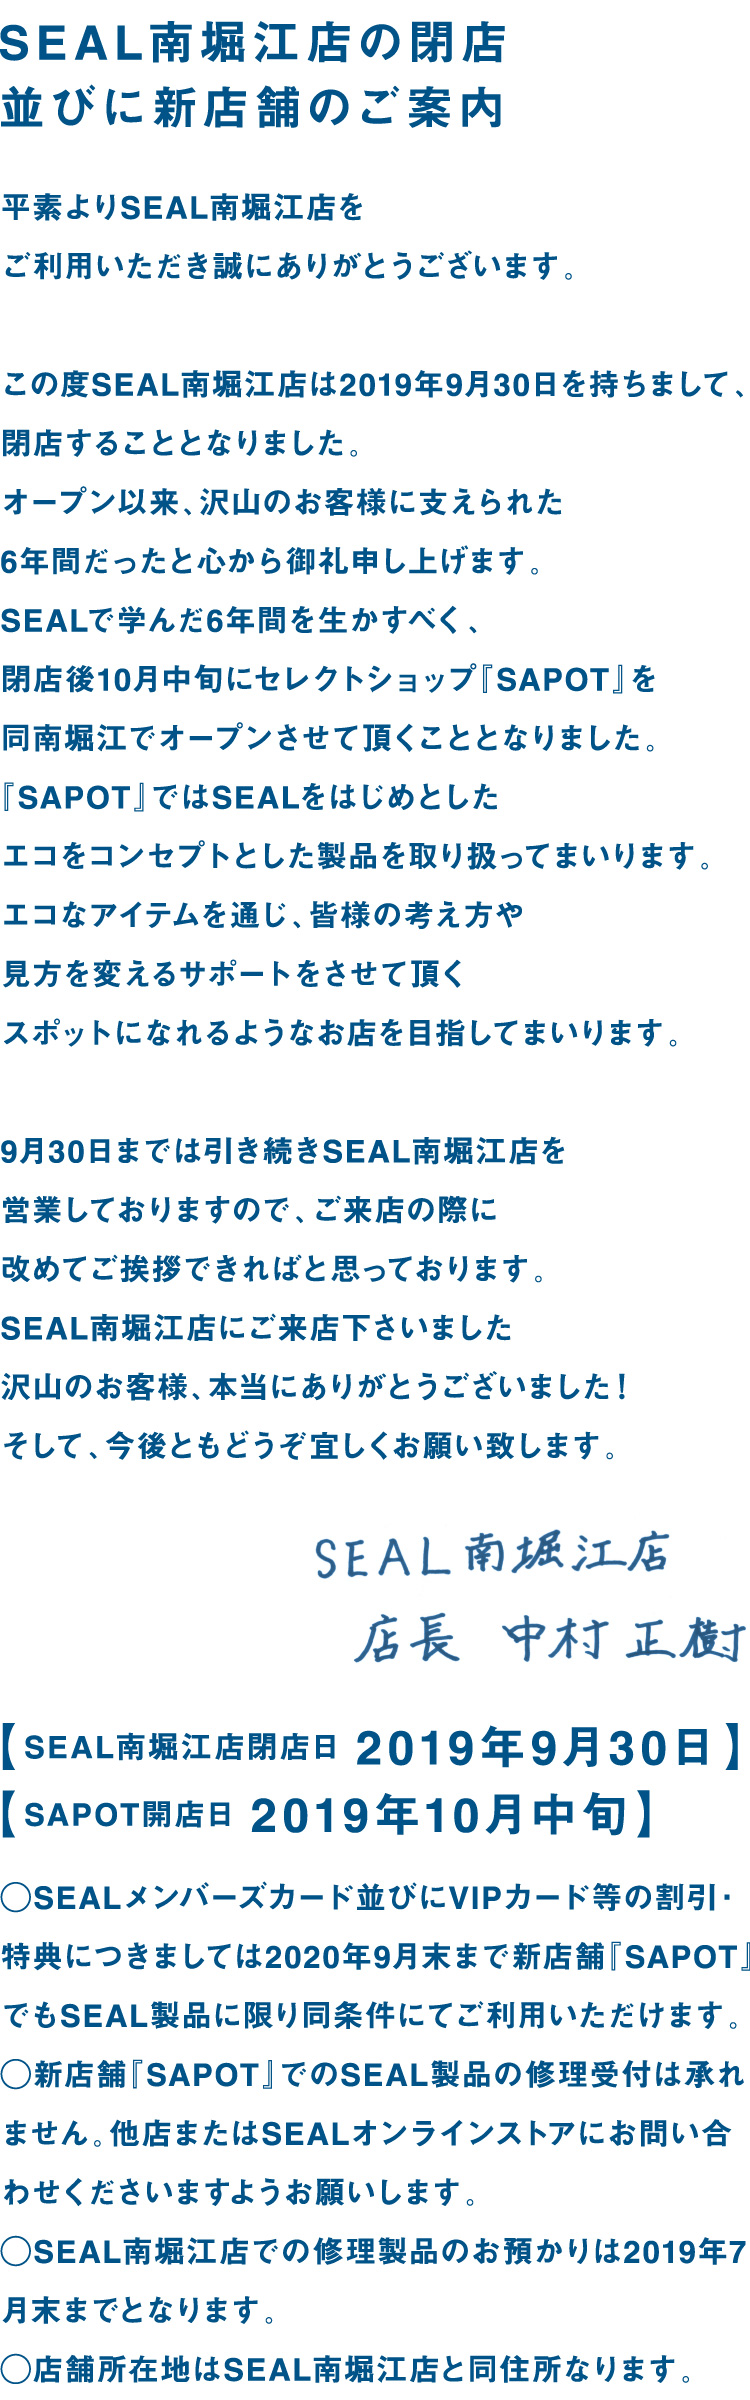 SEALX܁@x]